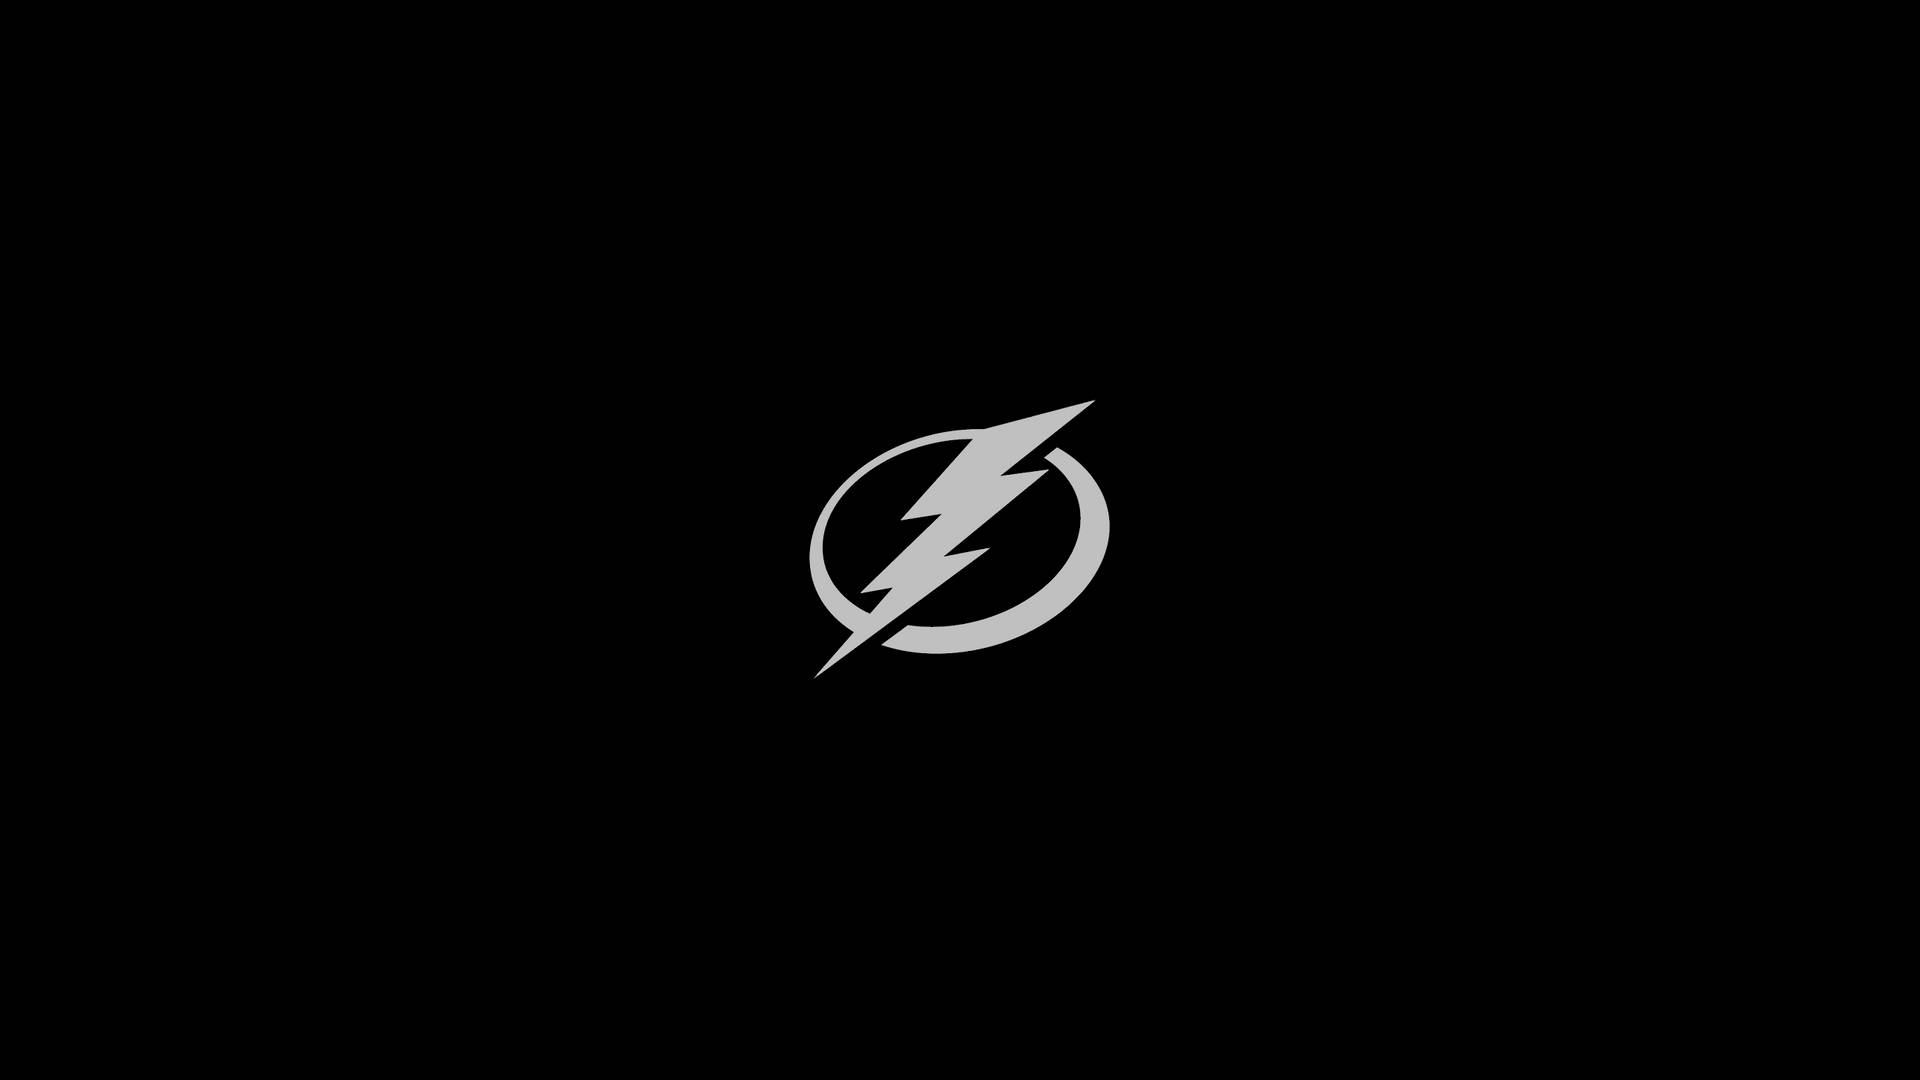 Tampabay Lightning En Blanco Y Negro. Fondo de pantalla